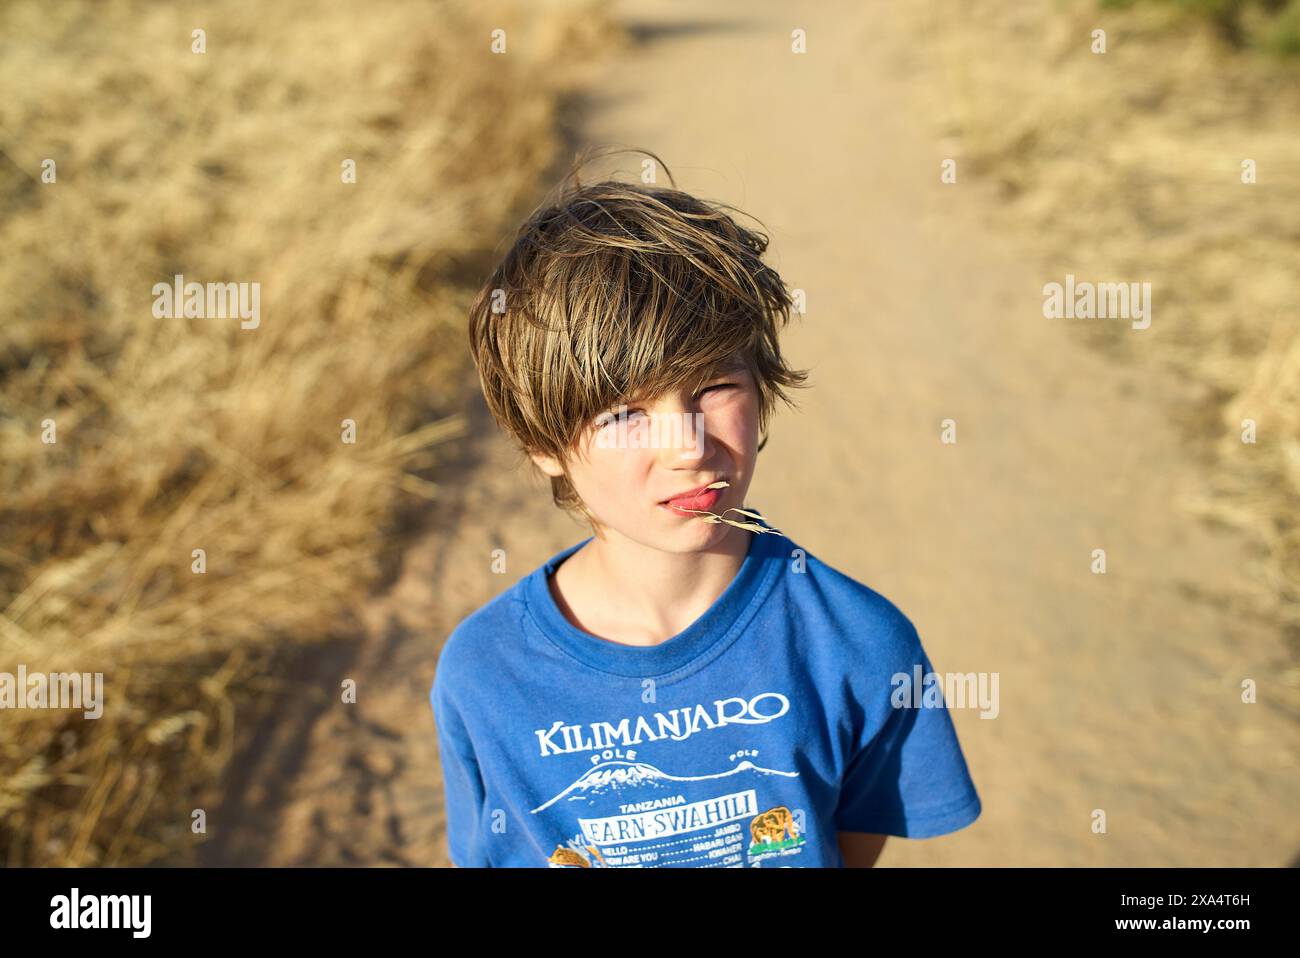 Jeune garçon avec des cheveux touffus debout sur une route poussiéreuse mâchant une paille, avec de l'herbe sèche de chaque côté. Banque D'Images